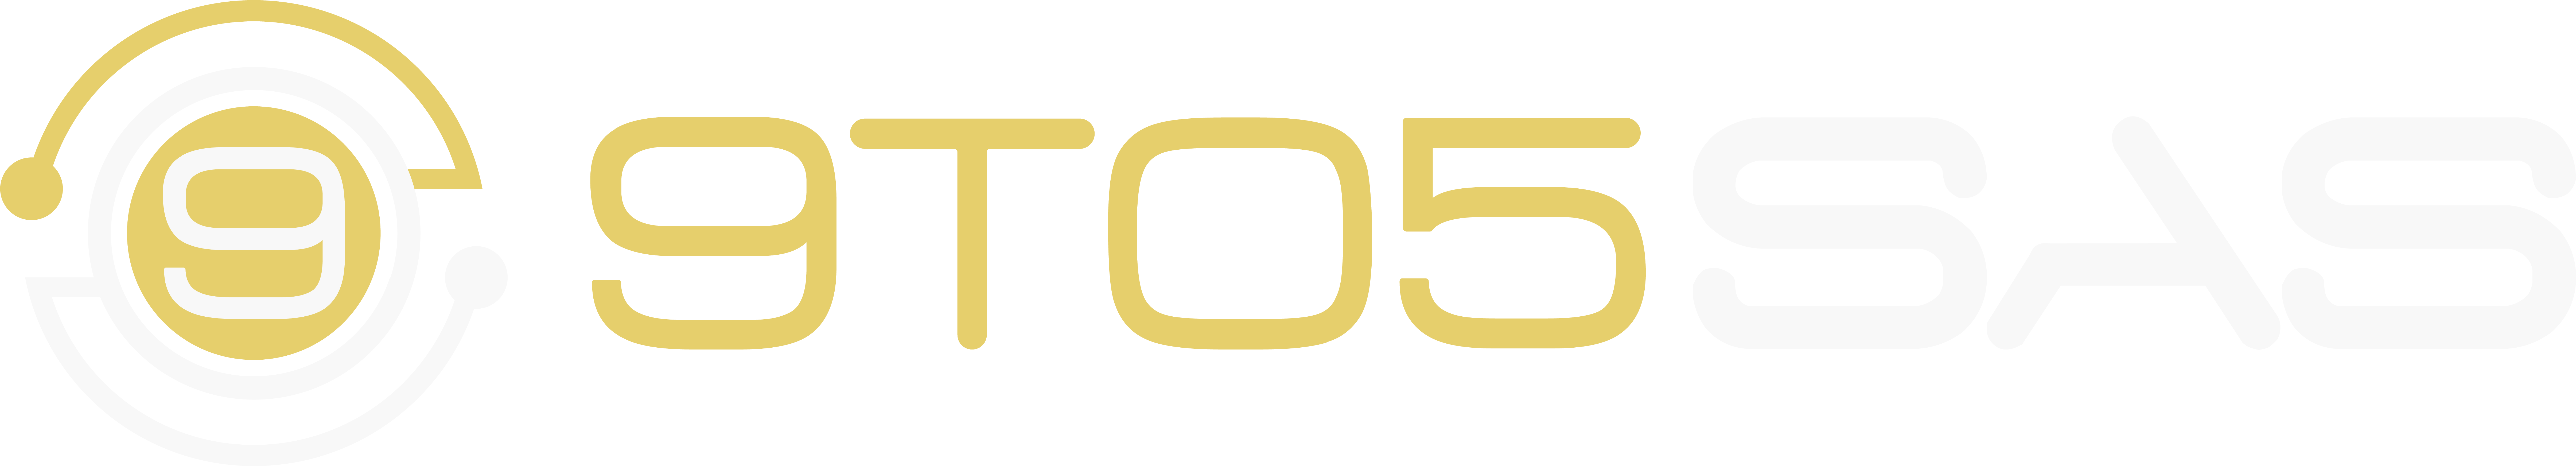 9to5sas-logo